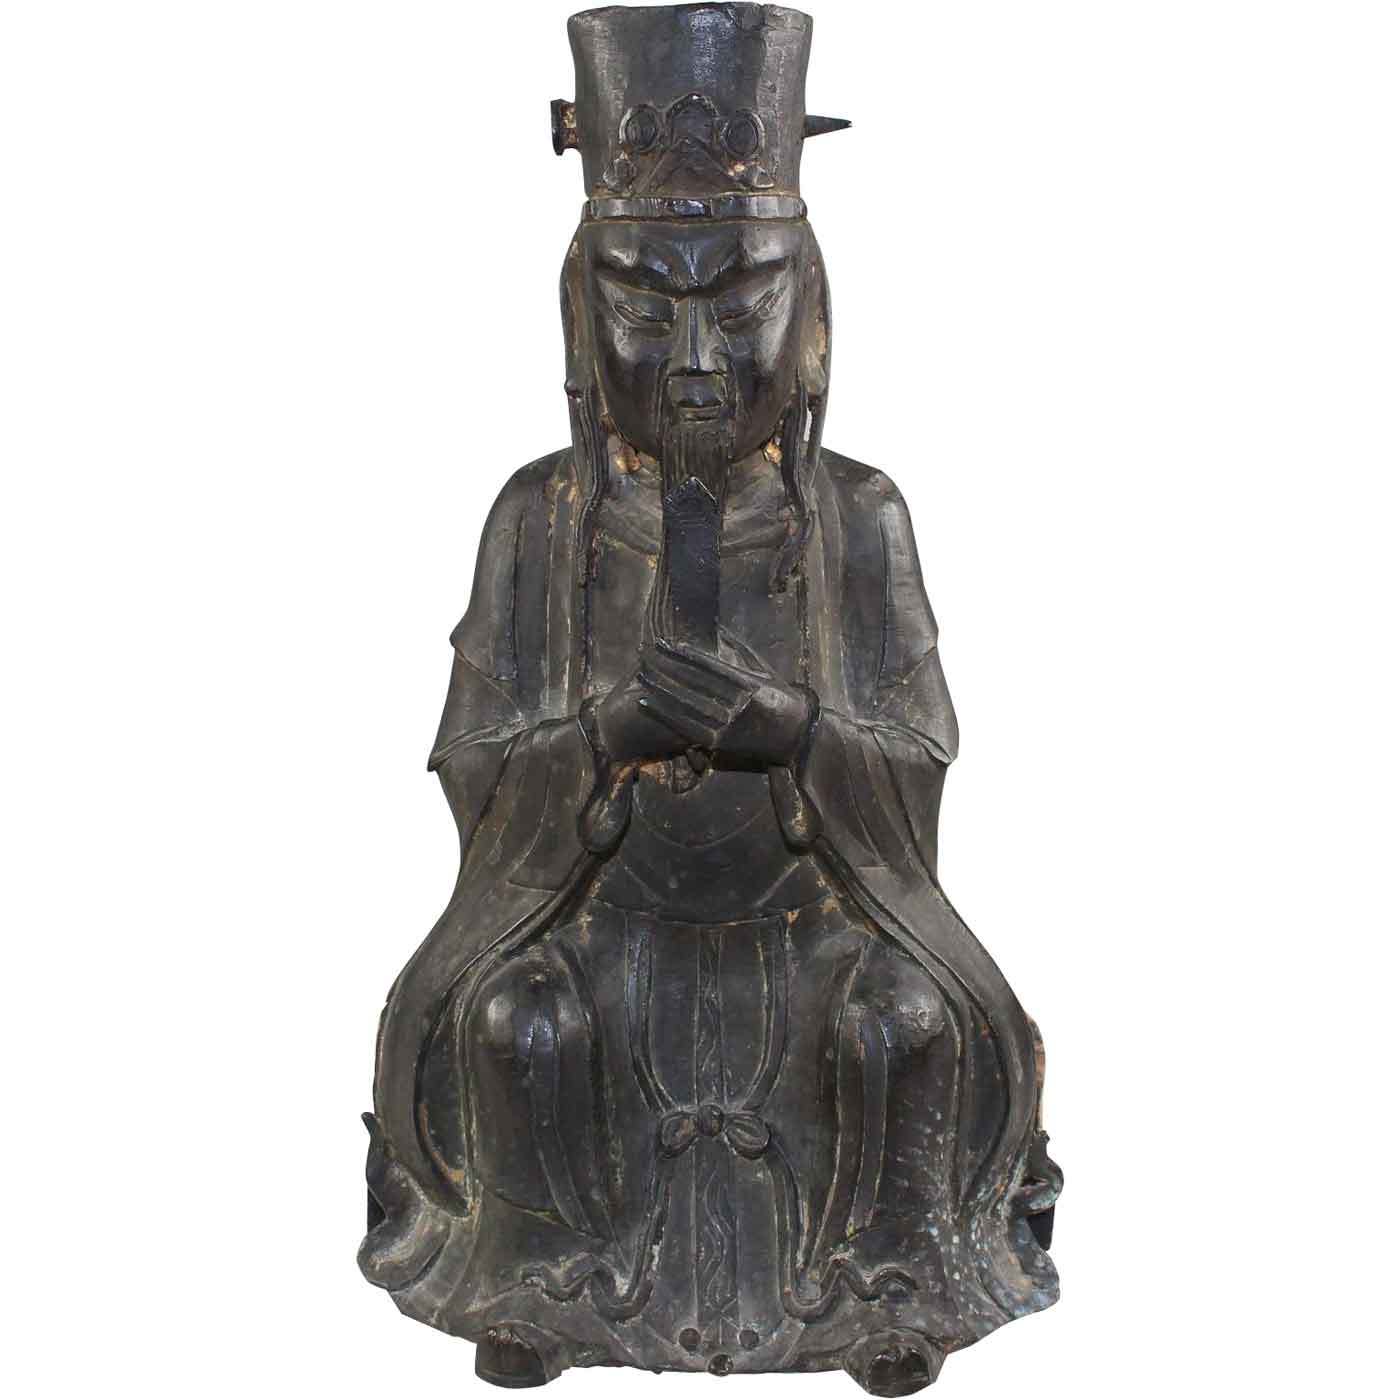  asiatika-bronze-buddha-15.jpg